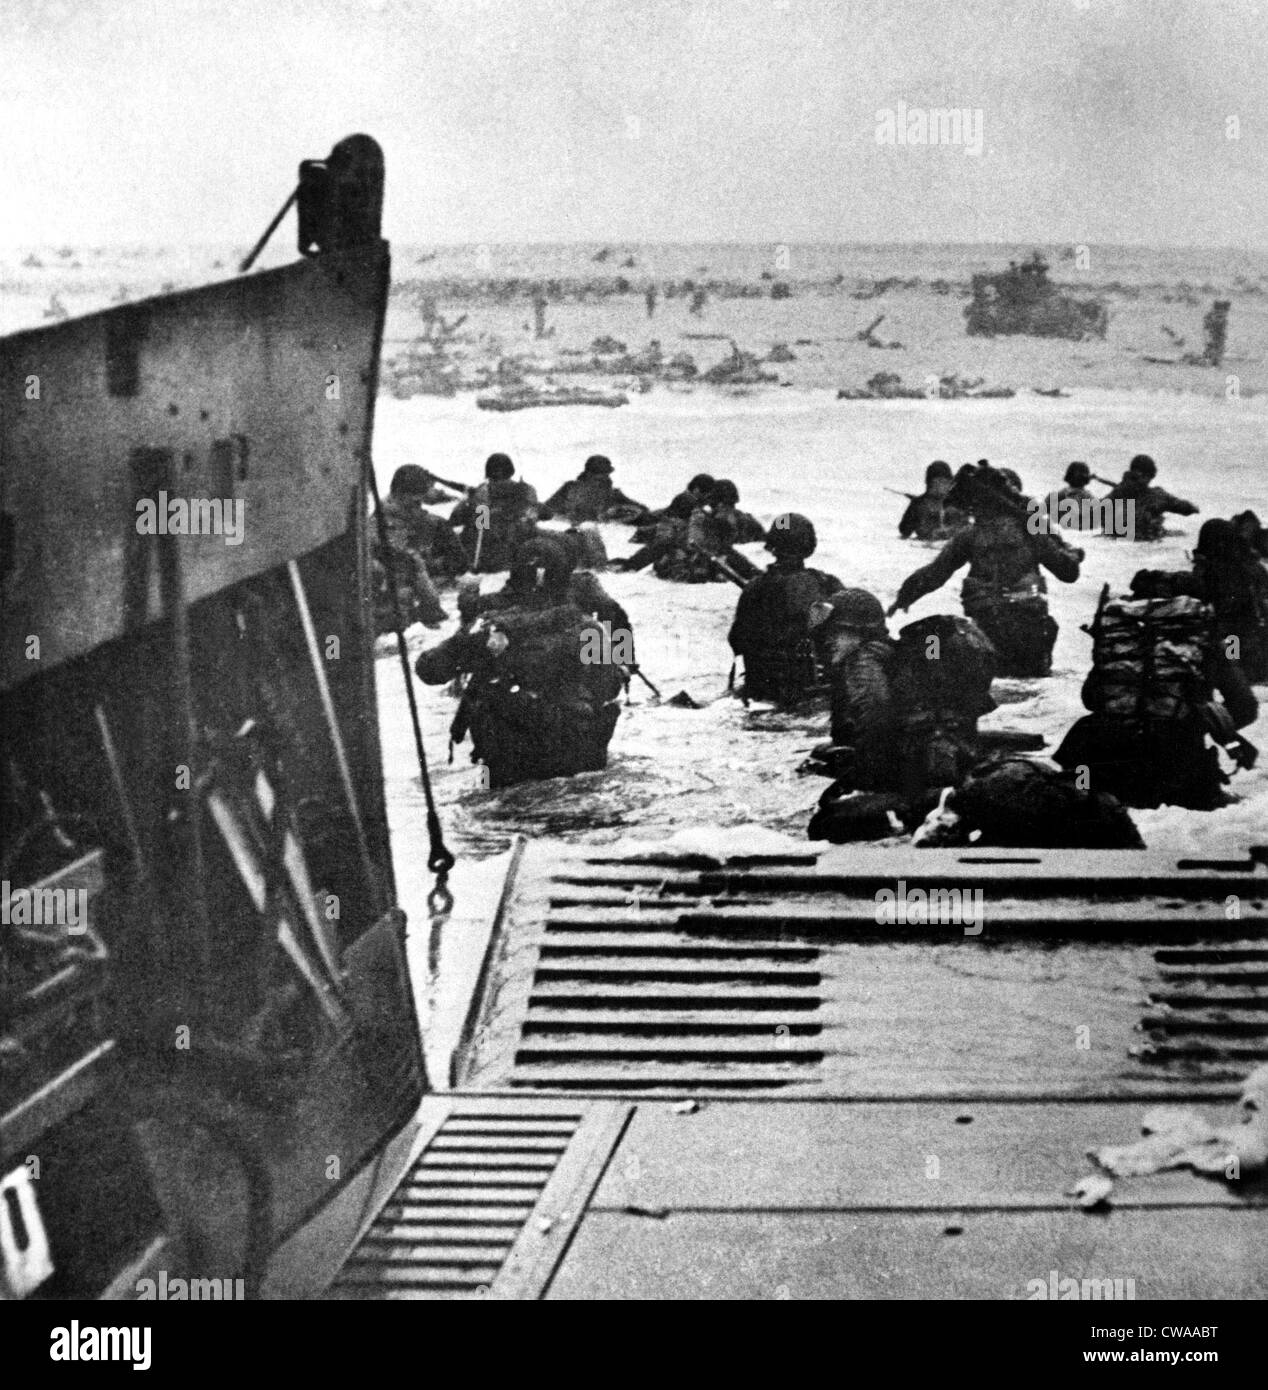 La Segunda Guerra Mundial: Dirigido por tanques anfibios de asalto, las tropas británicas una playa.. Cortesía: CSU Archives / Everett Collection Foto de stock